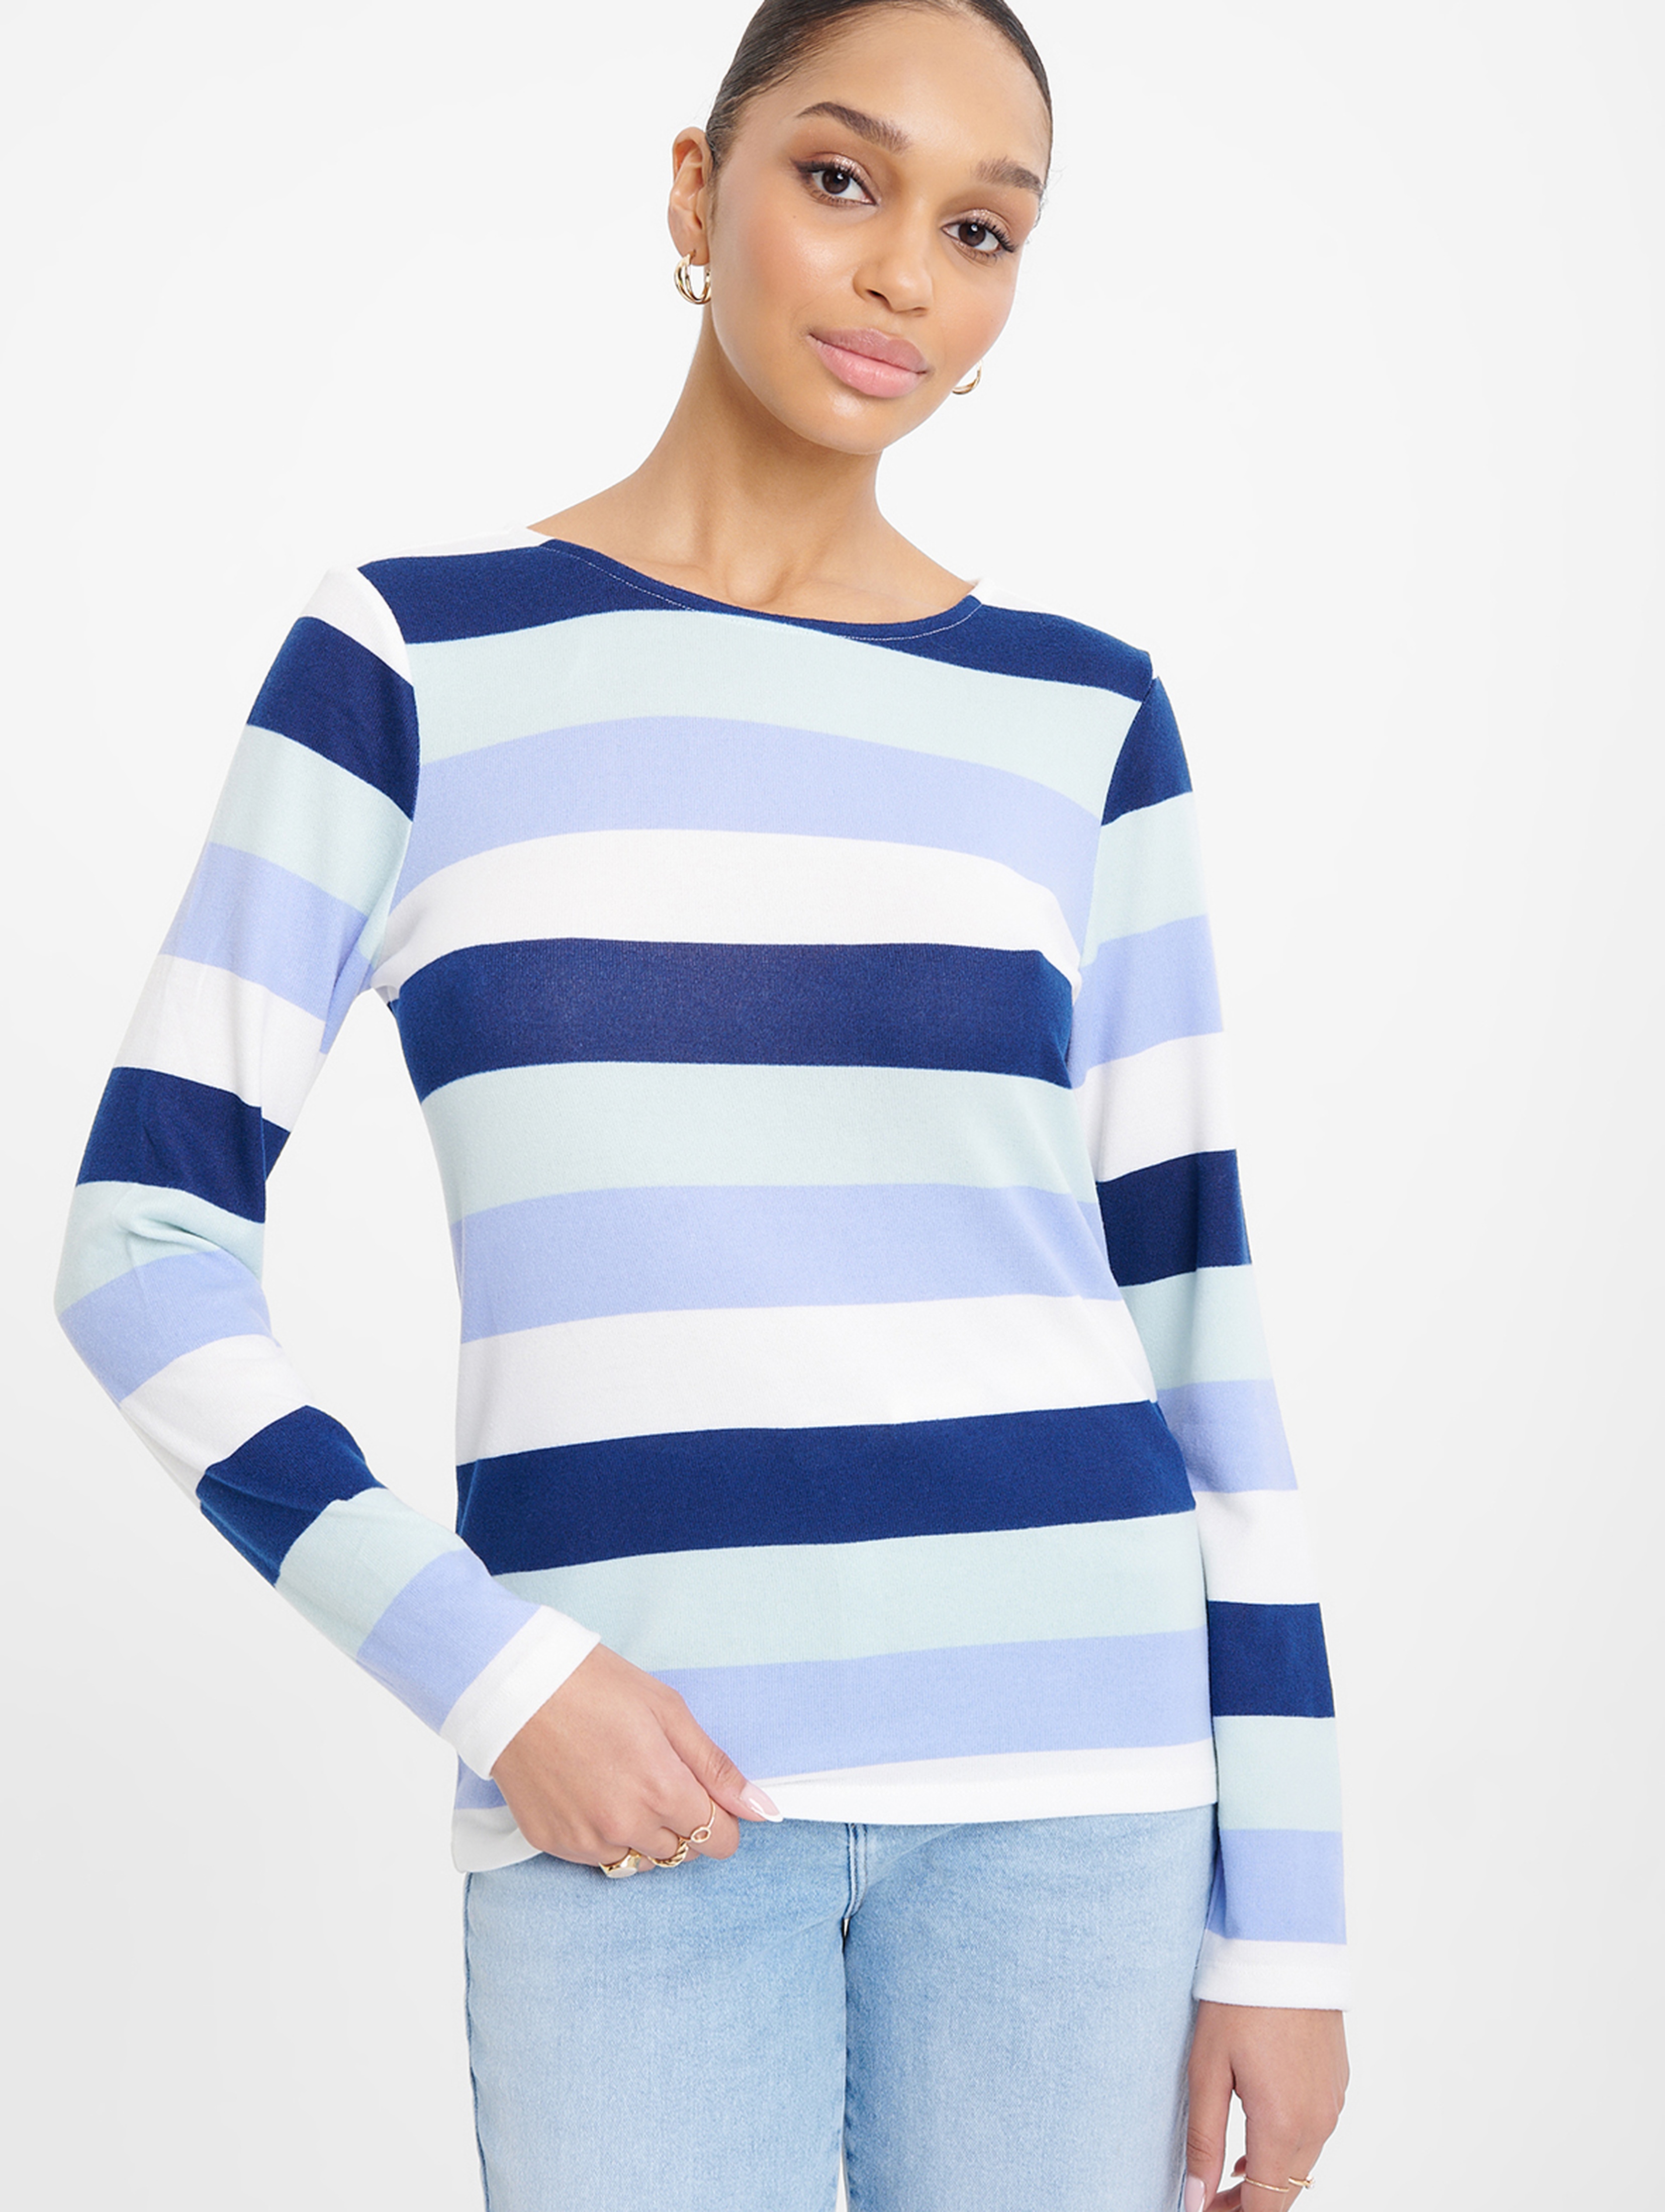 Sweter damski nierozpinany z nadrukiem niebieski